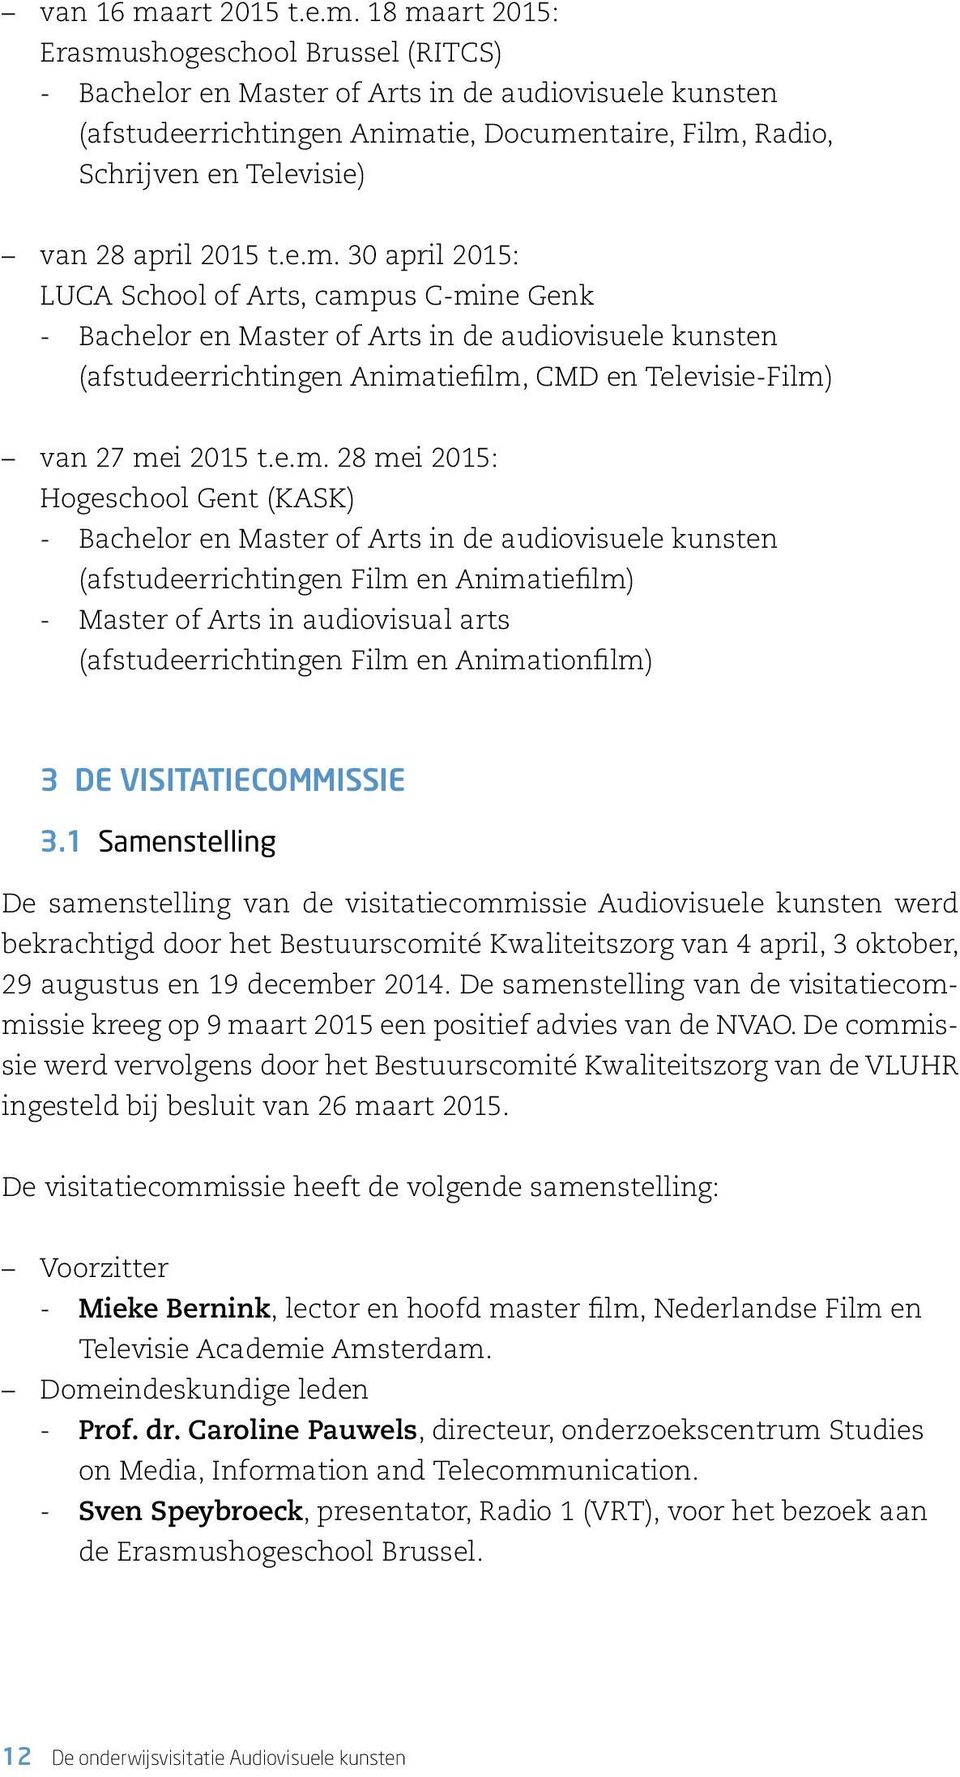 18 maart 2015: Erasmushogeschool Brussel (RITCS) -- Bachelor en Master of Arts in de audiovisuele kunsten (afstudeerrichtingen Animatie, Documentaire, Film, Radio, Schrijven en Televisie) van 28